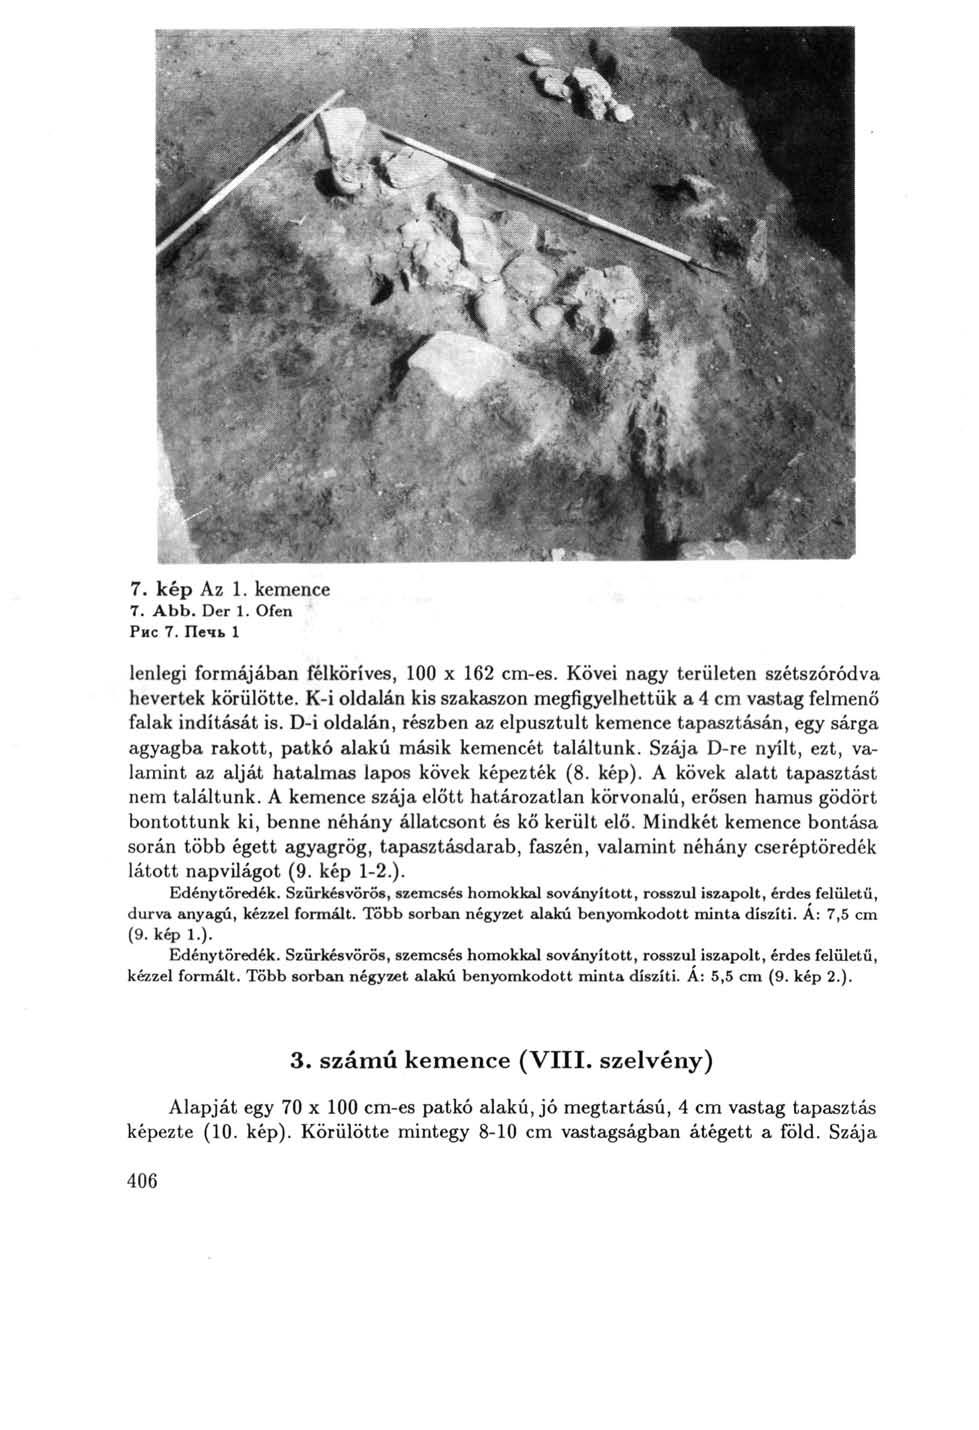 7. kép Az 1. kemence 7. Abb. Der 1. Ofen Рис 7. Печь 1 lenlegi formájában félköríves, 100 x 162 cm-es. Kövei nagy területen szétszóródva hevertek körülötte.